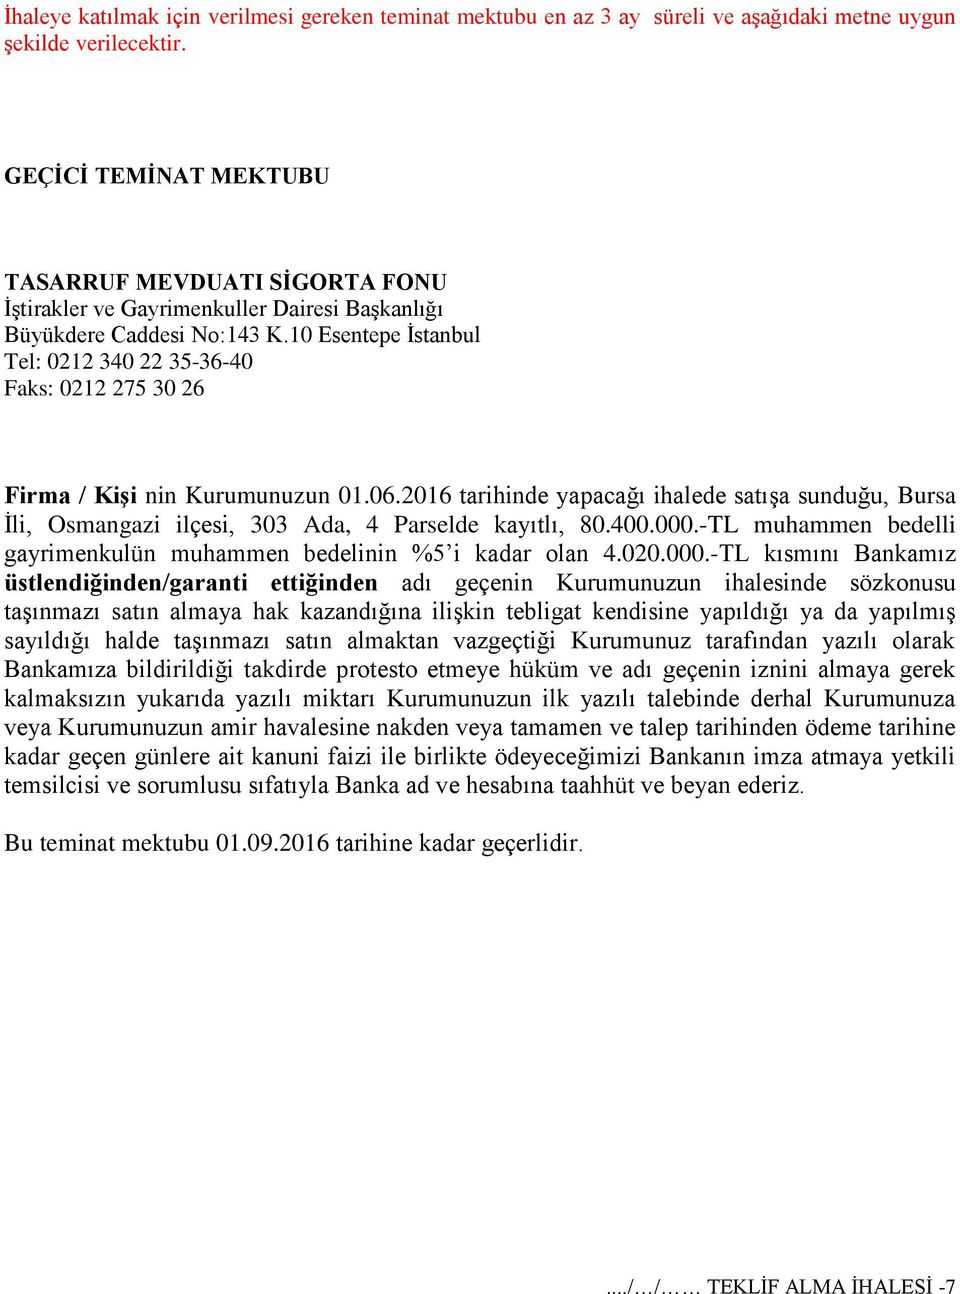 10 Esentepe İstanbul Tel: 0212 340 22 35-36-40 Faks: 0212 275 30 26 Firma / Kişi nin Kurumunuzun 01.06.